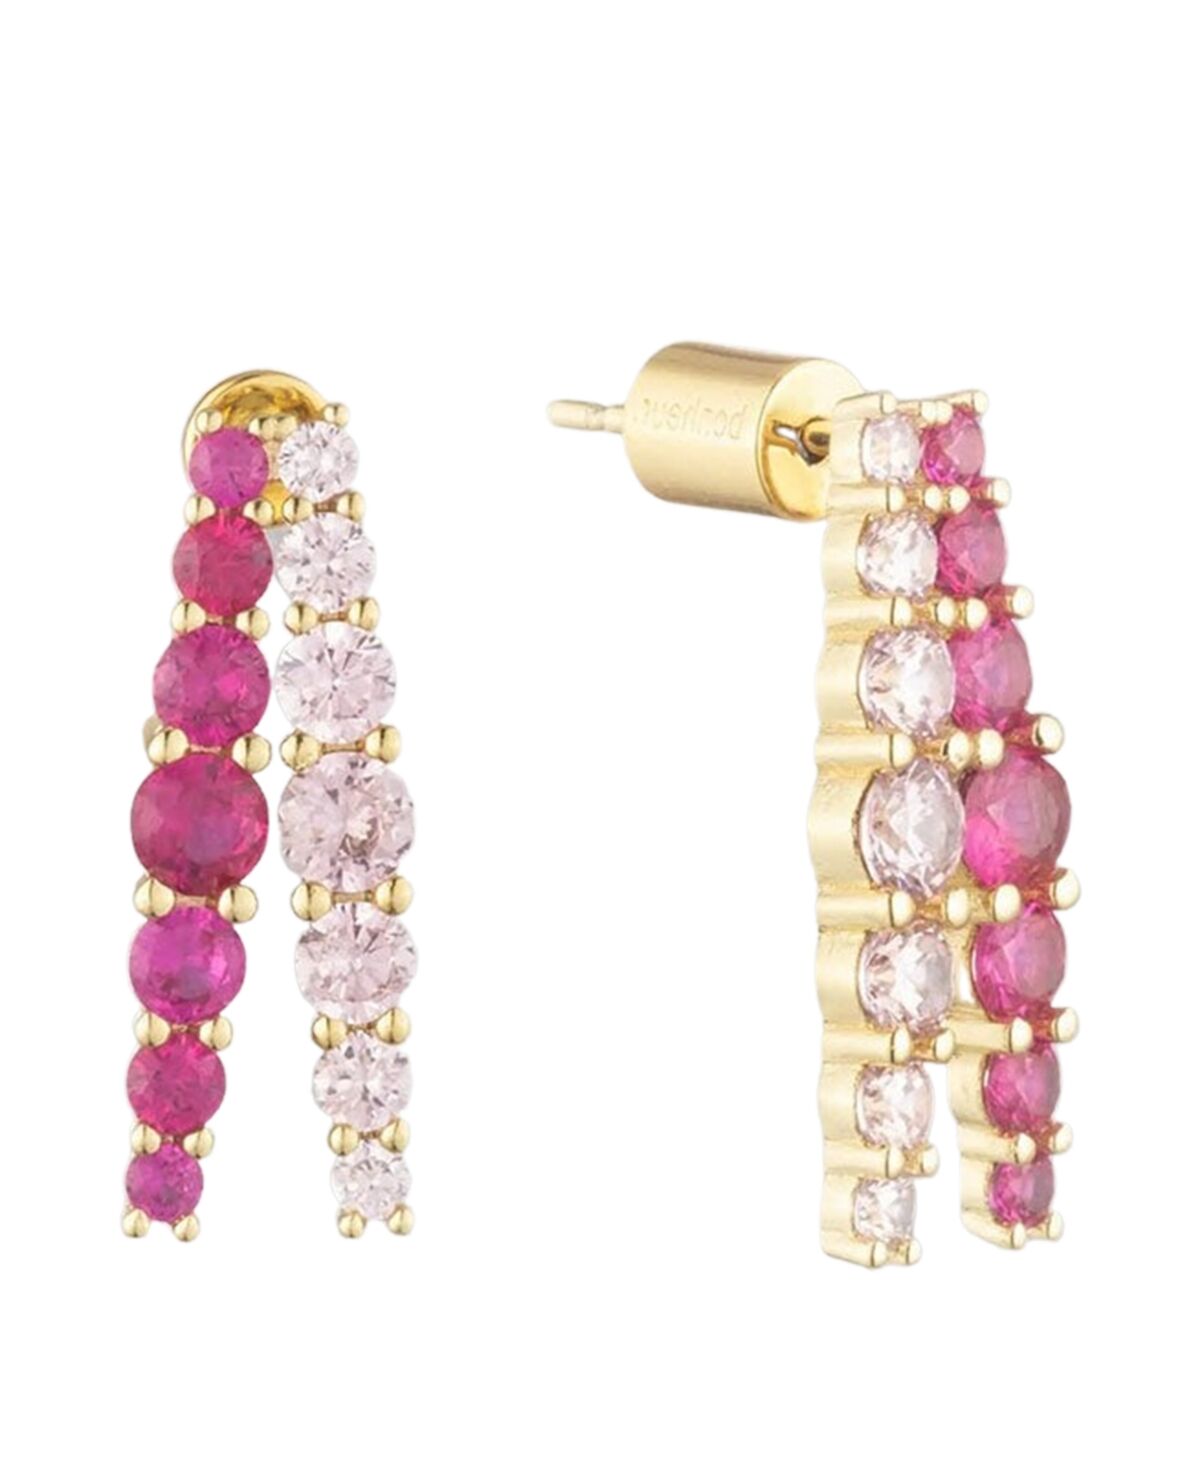 Bonheur Jewelry Seraphine Pink Crystal Half Hoop Earrings - Karat Gold Plated Brass